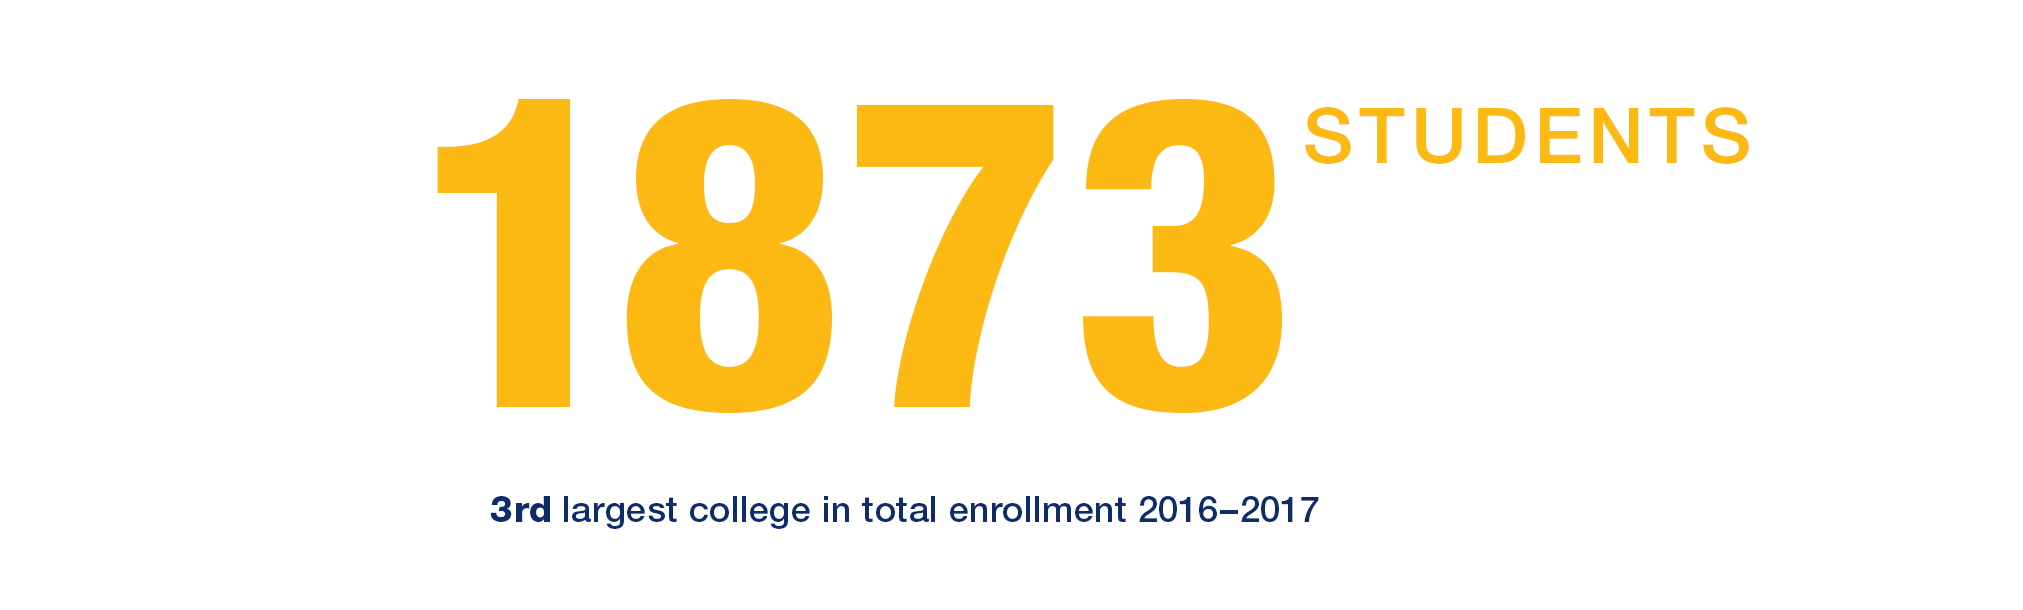 EHHD Total Enrollment 2016-2017